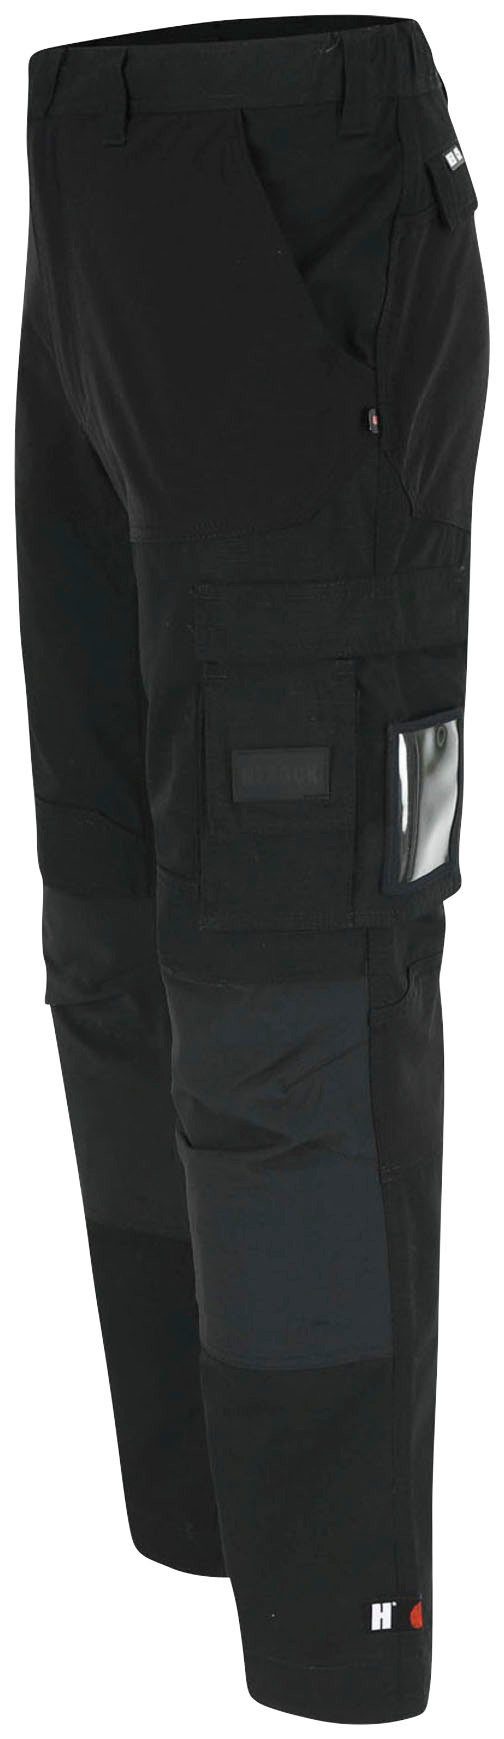 SHORTLEG und Hoses Multi-Pocket, schwarz feste Arbeitshose Hector 2 Kurzgröβe, 4-Wege-Stretch-Teile Herock Nageltaschen